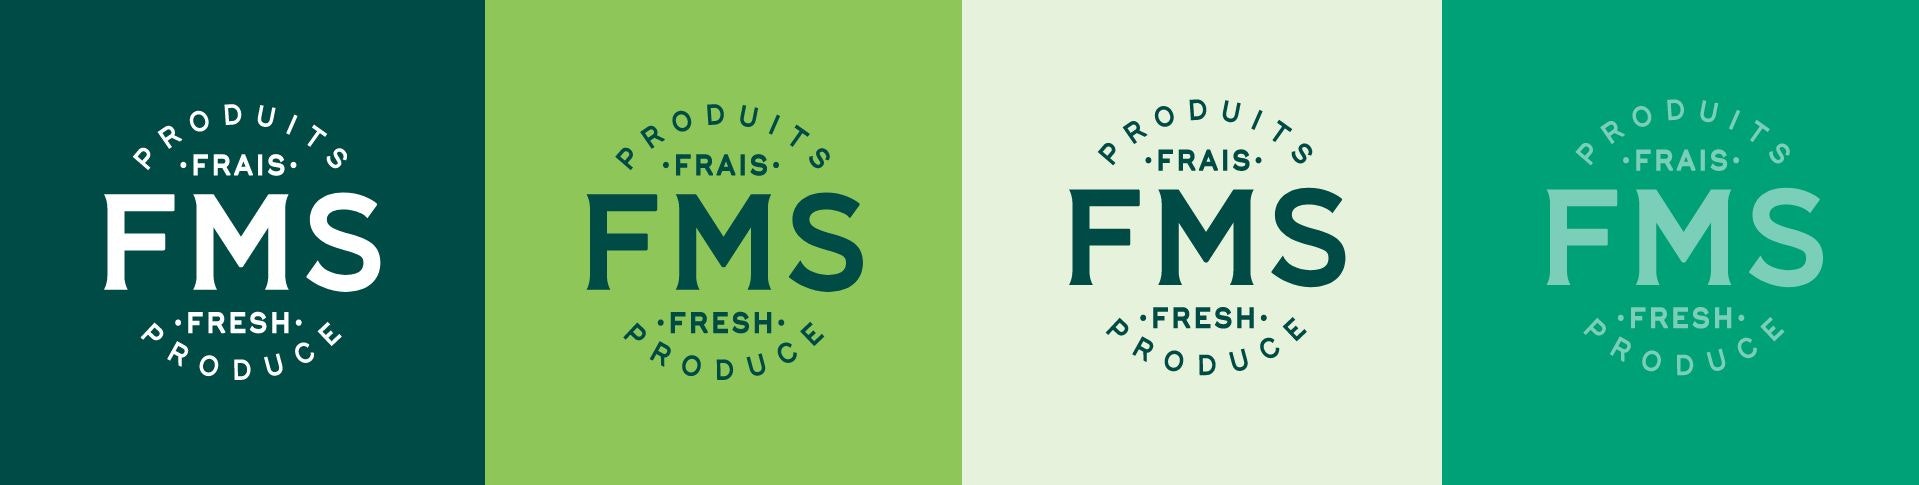 Fms logo colors